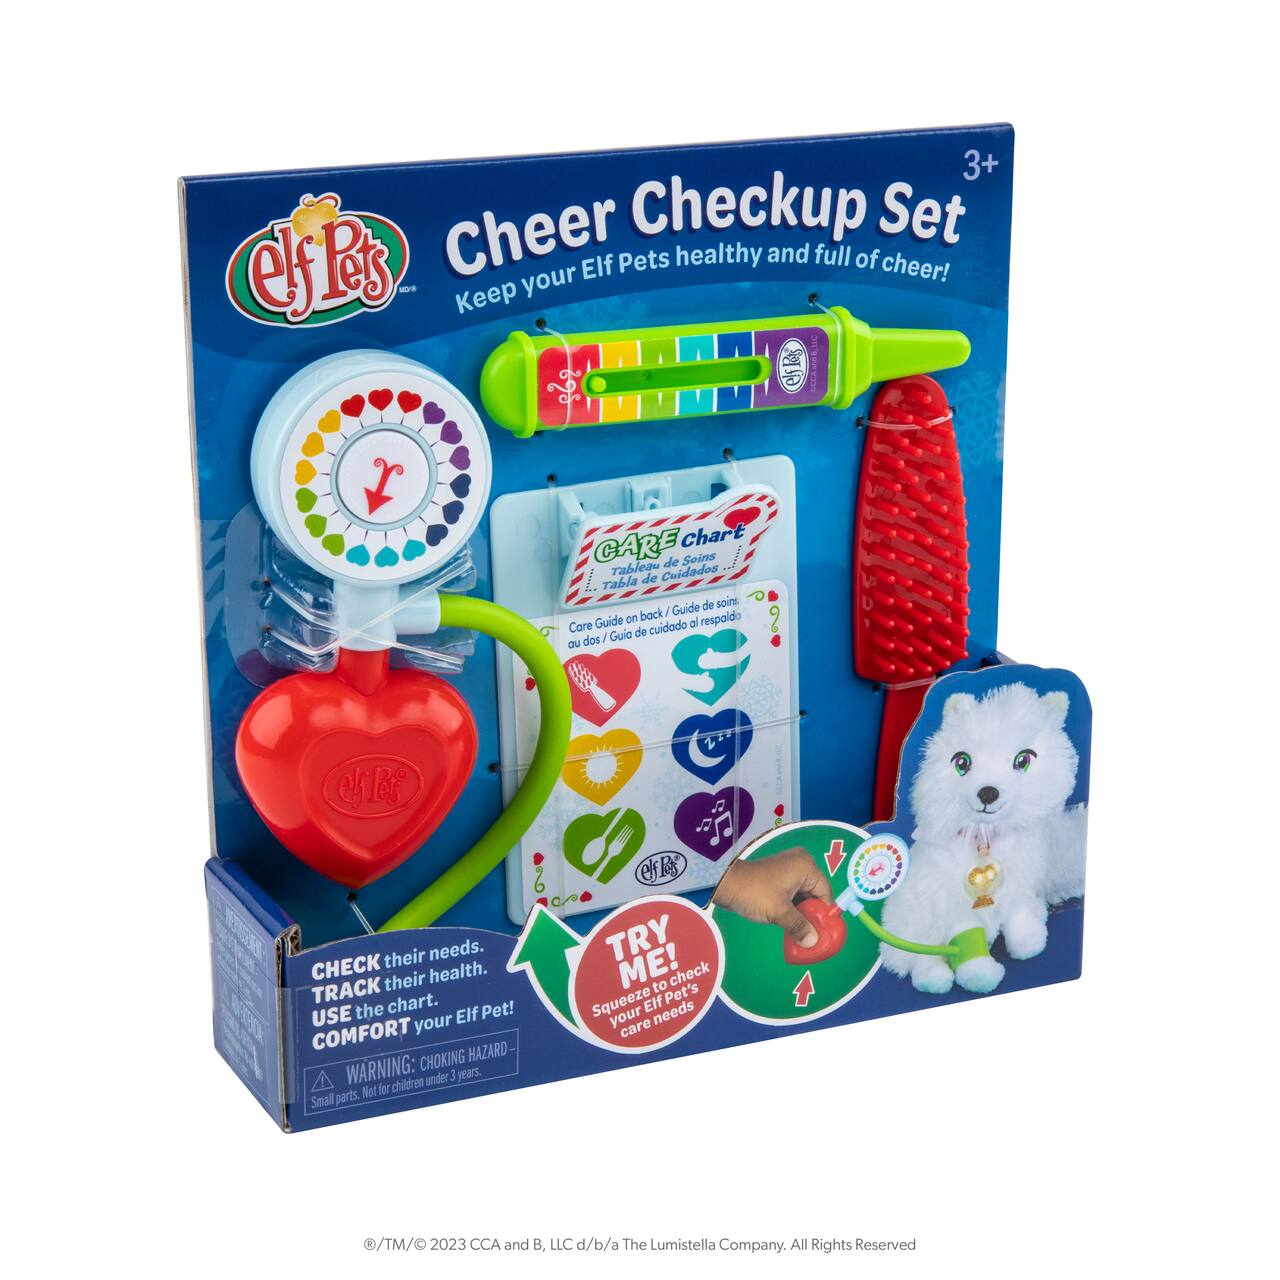 The Elf on the Shelf&#xAE; Elf Pets&#xAE; Cheer Checkup Set